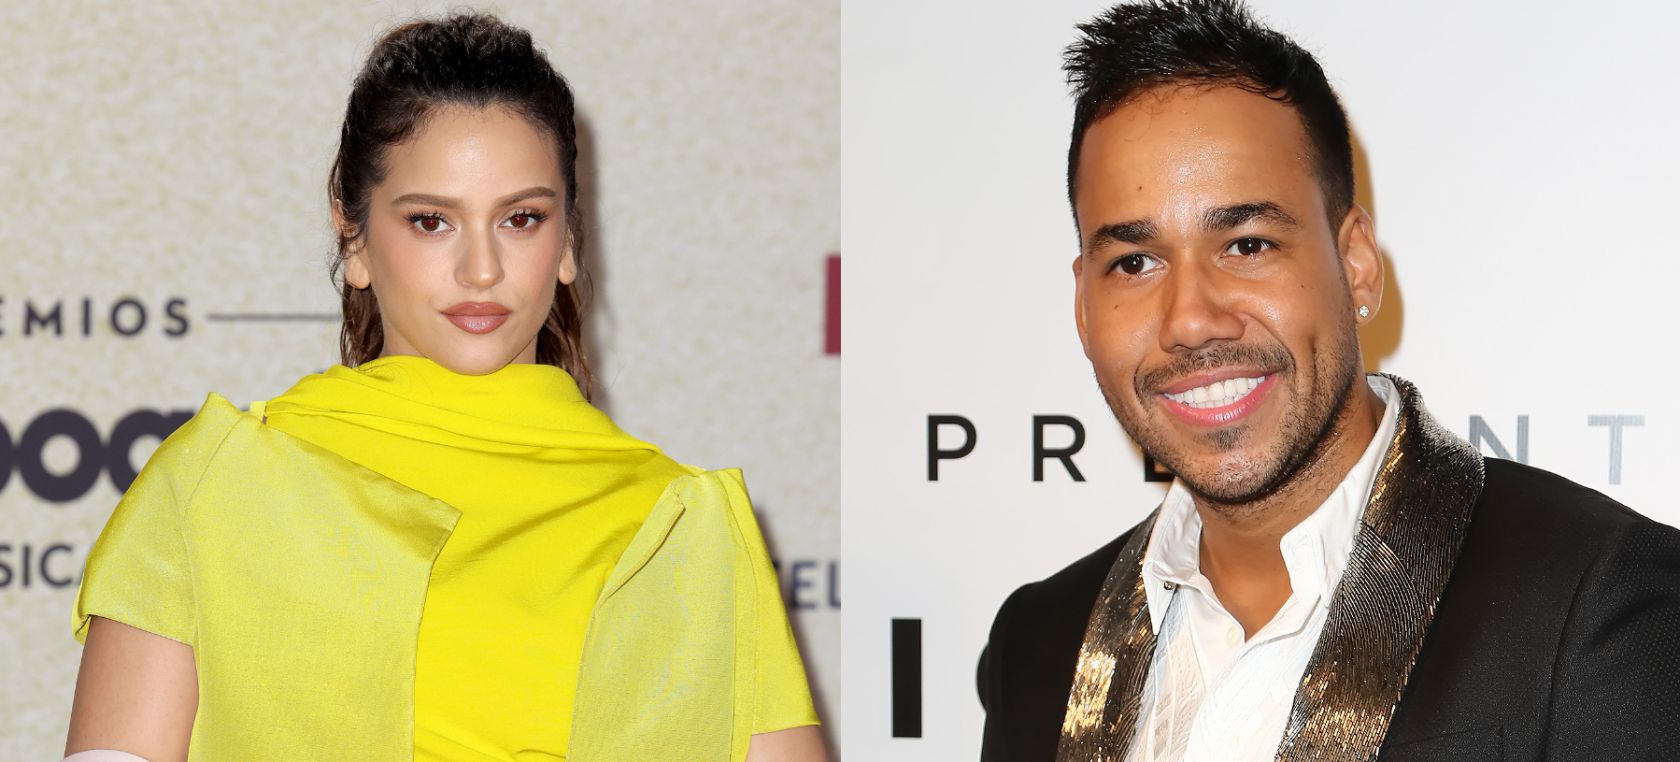 Rosalía y Romeo Santos anuncian su colaboración tan esperada: 'El